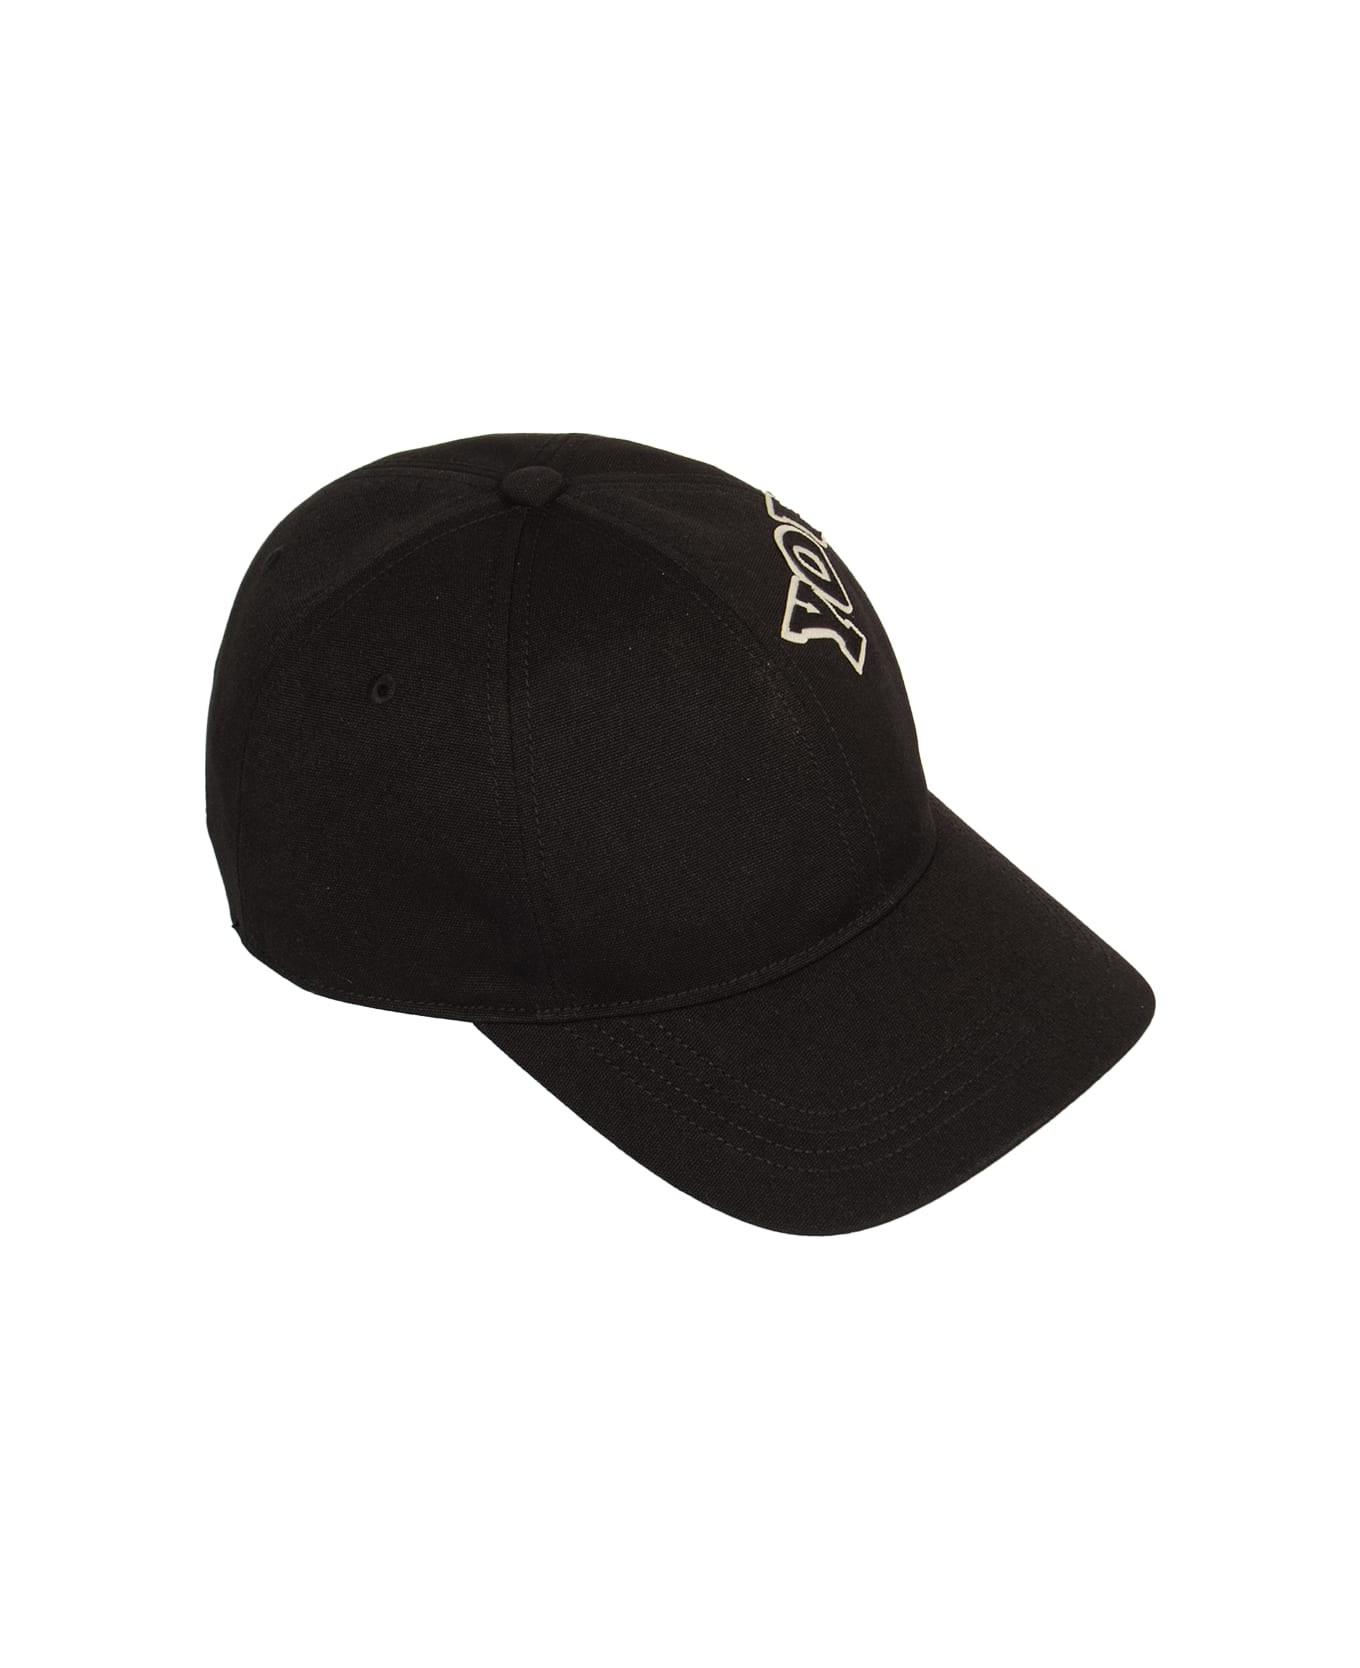 Y-3 Morphed Cap - Black 帽子